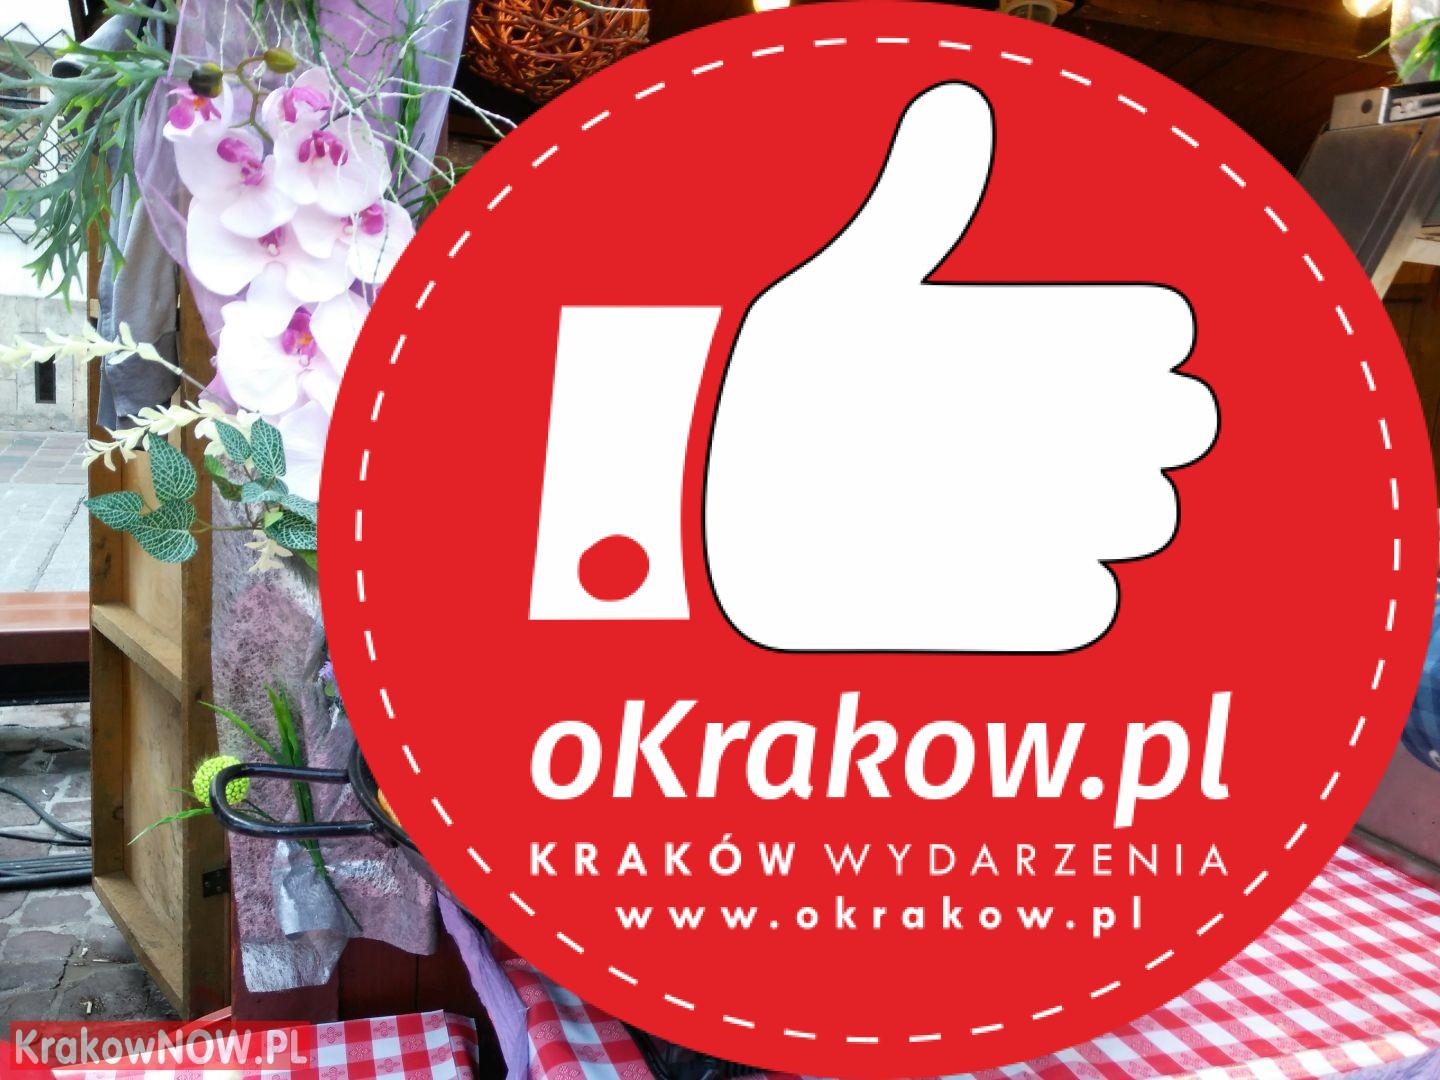 festiwal pierogow krakow maly rynek 22 1 - Zdjęcia z 14 Festiwalu Pierogów w Krakowie (czwartek)